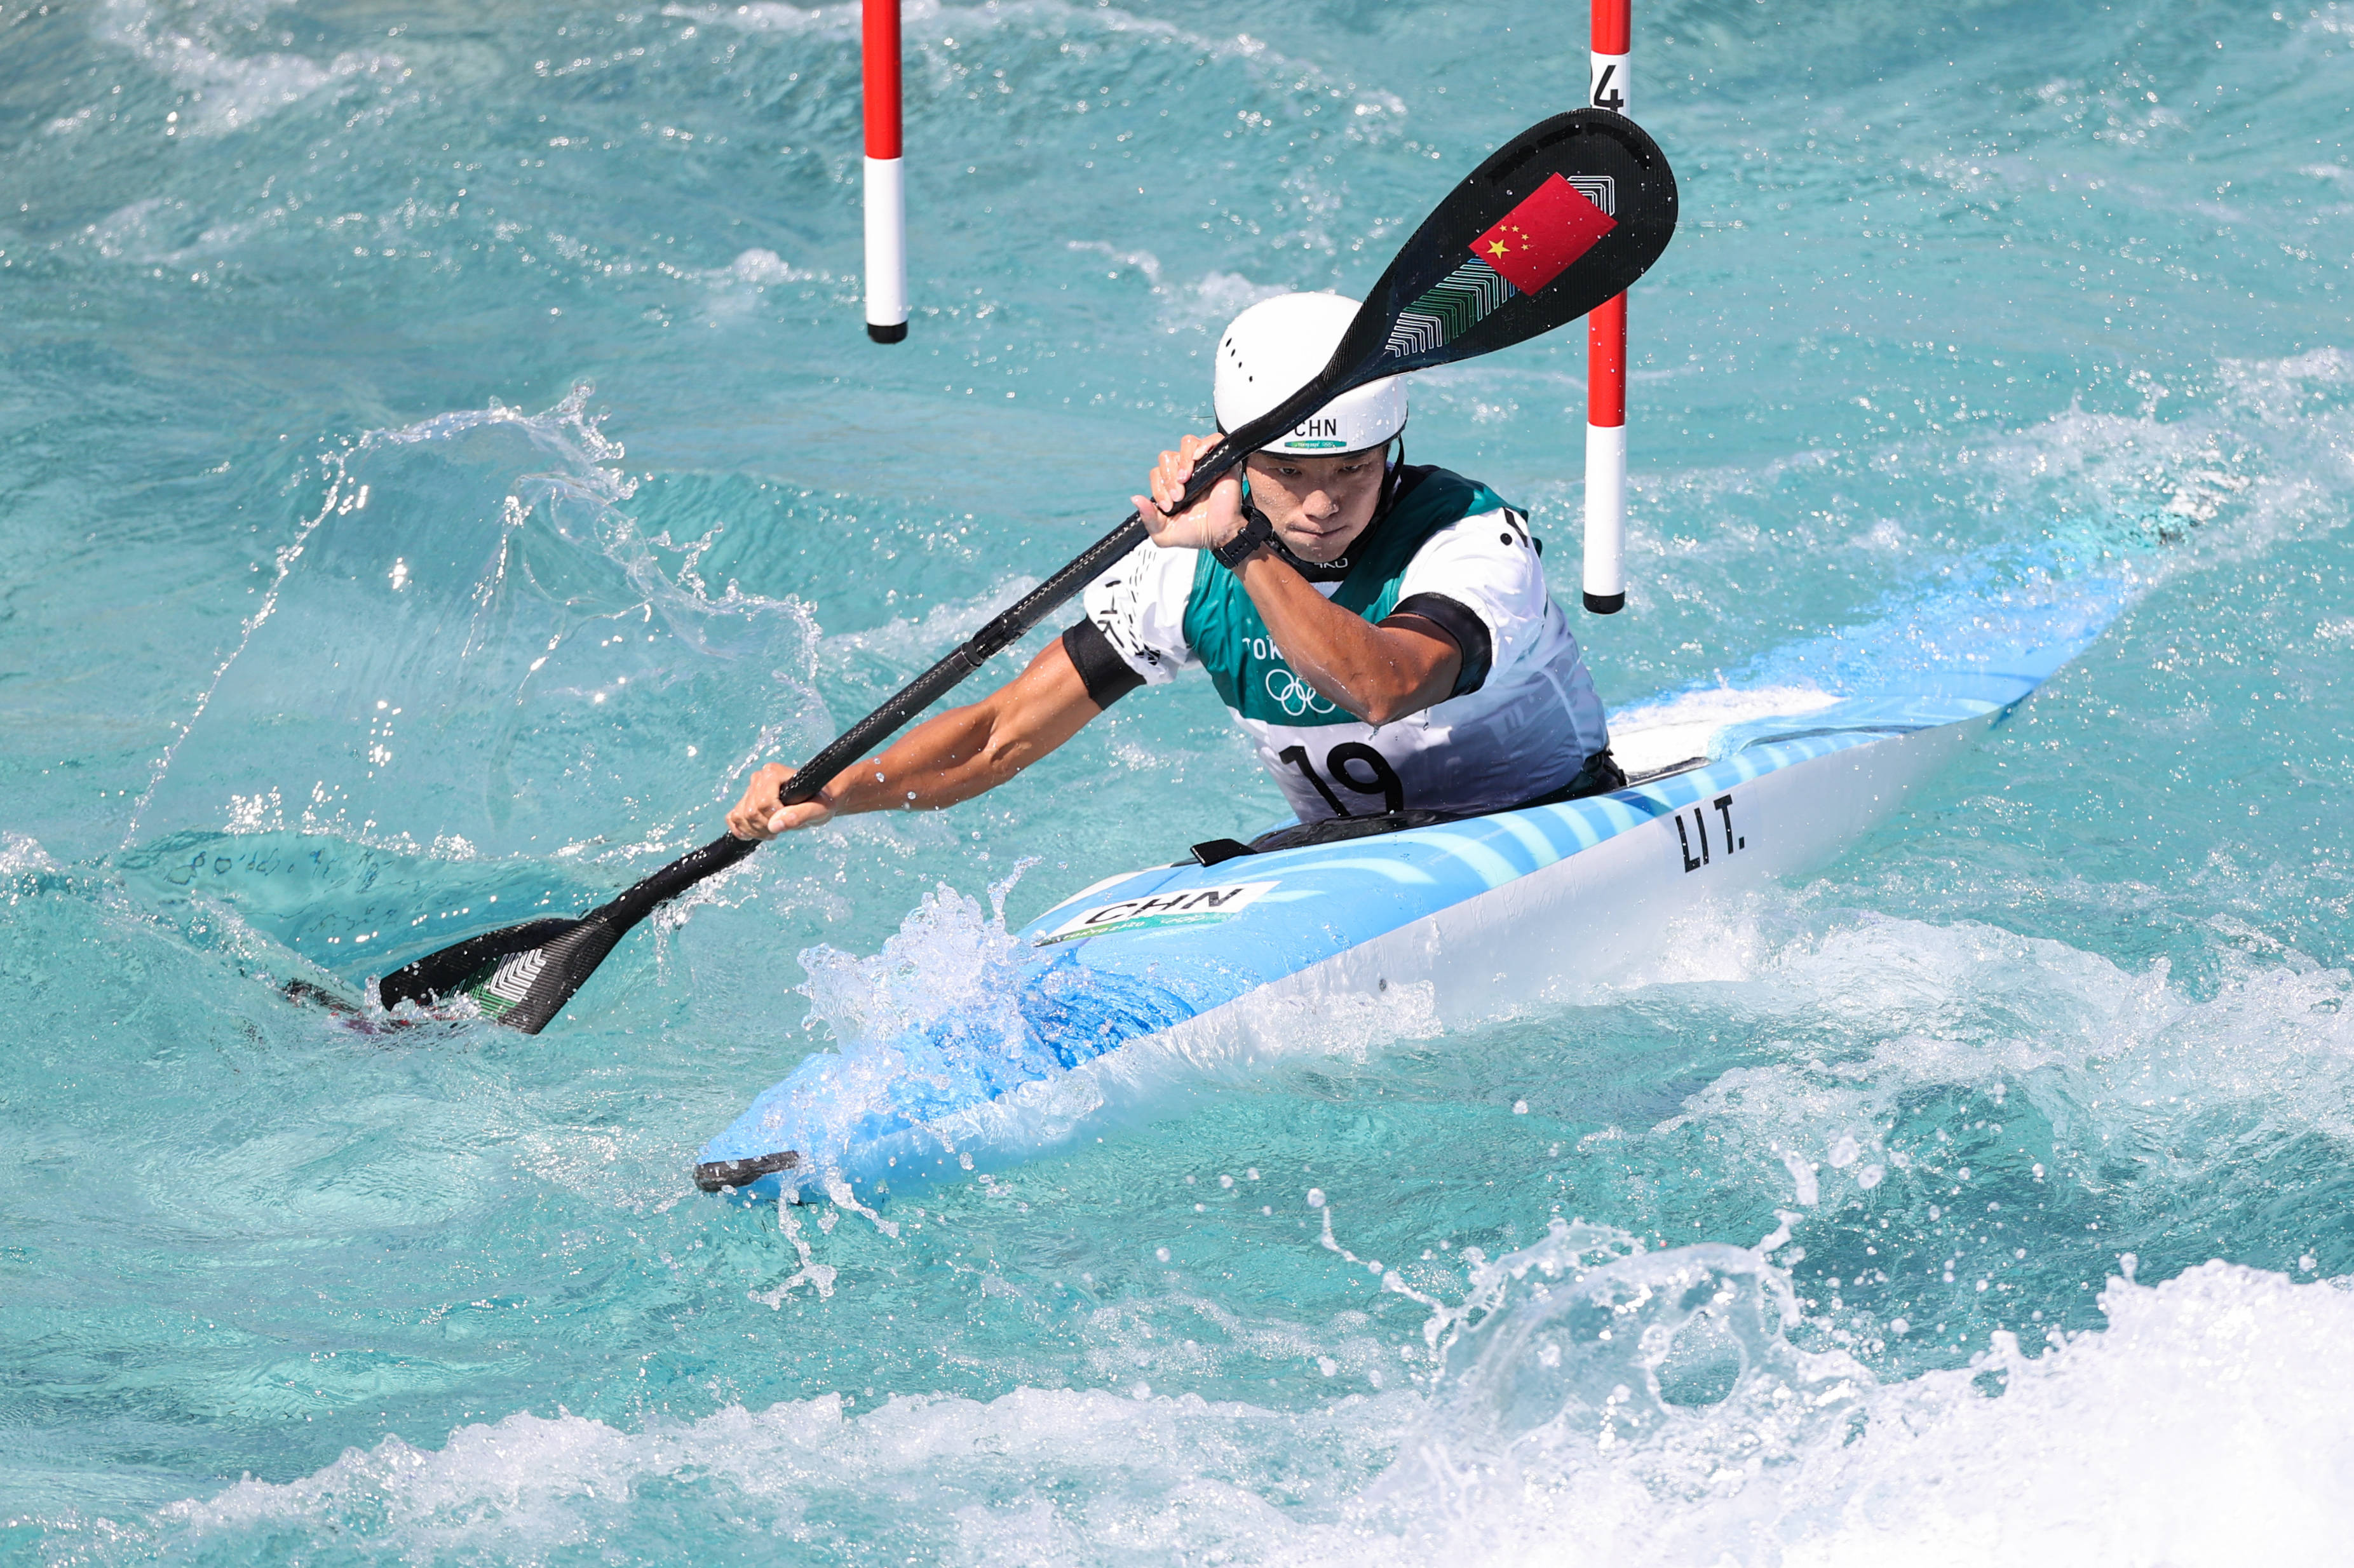 新华社记者 郑焕松 摄当日,在东京奥运会皮划艇激流回旋女子皮艇半